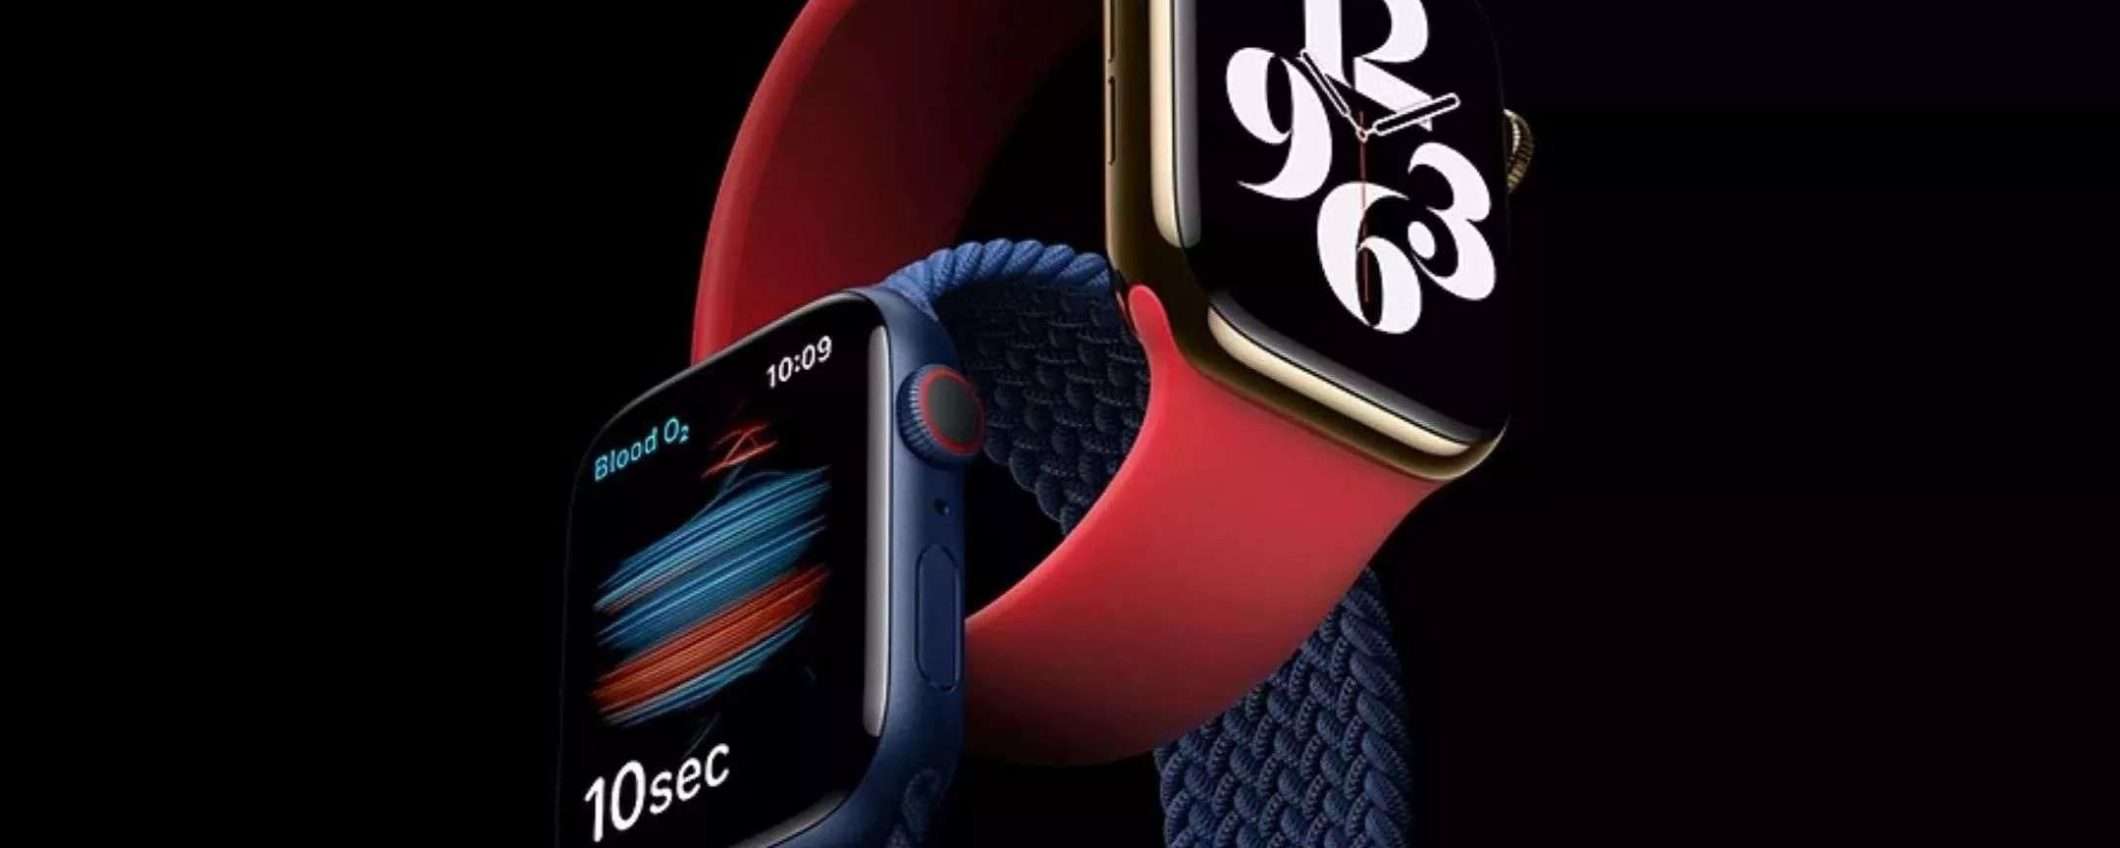 Apple Watch Series 6 (44 mm): risparmi SUBITO 90€ su Amazon